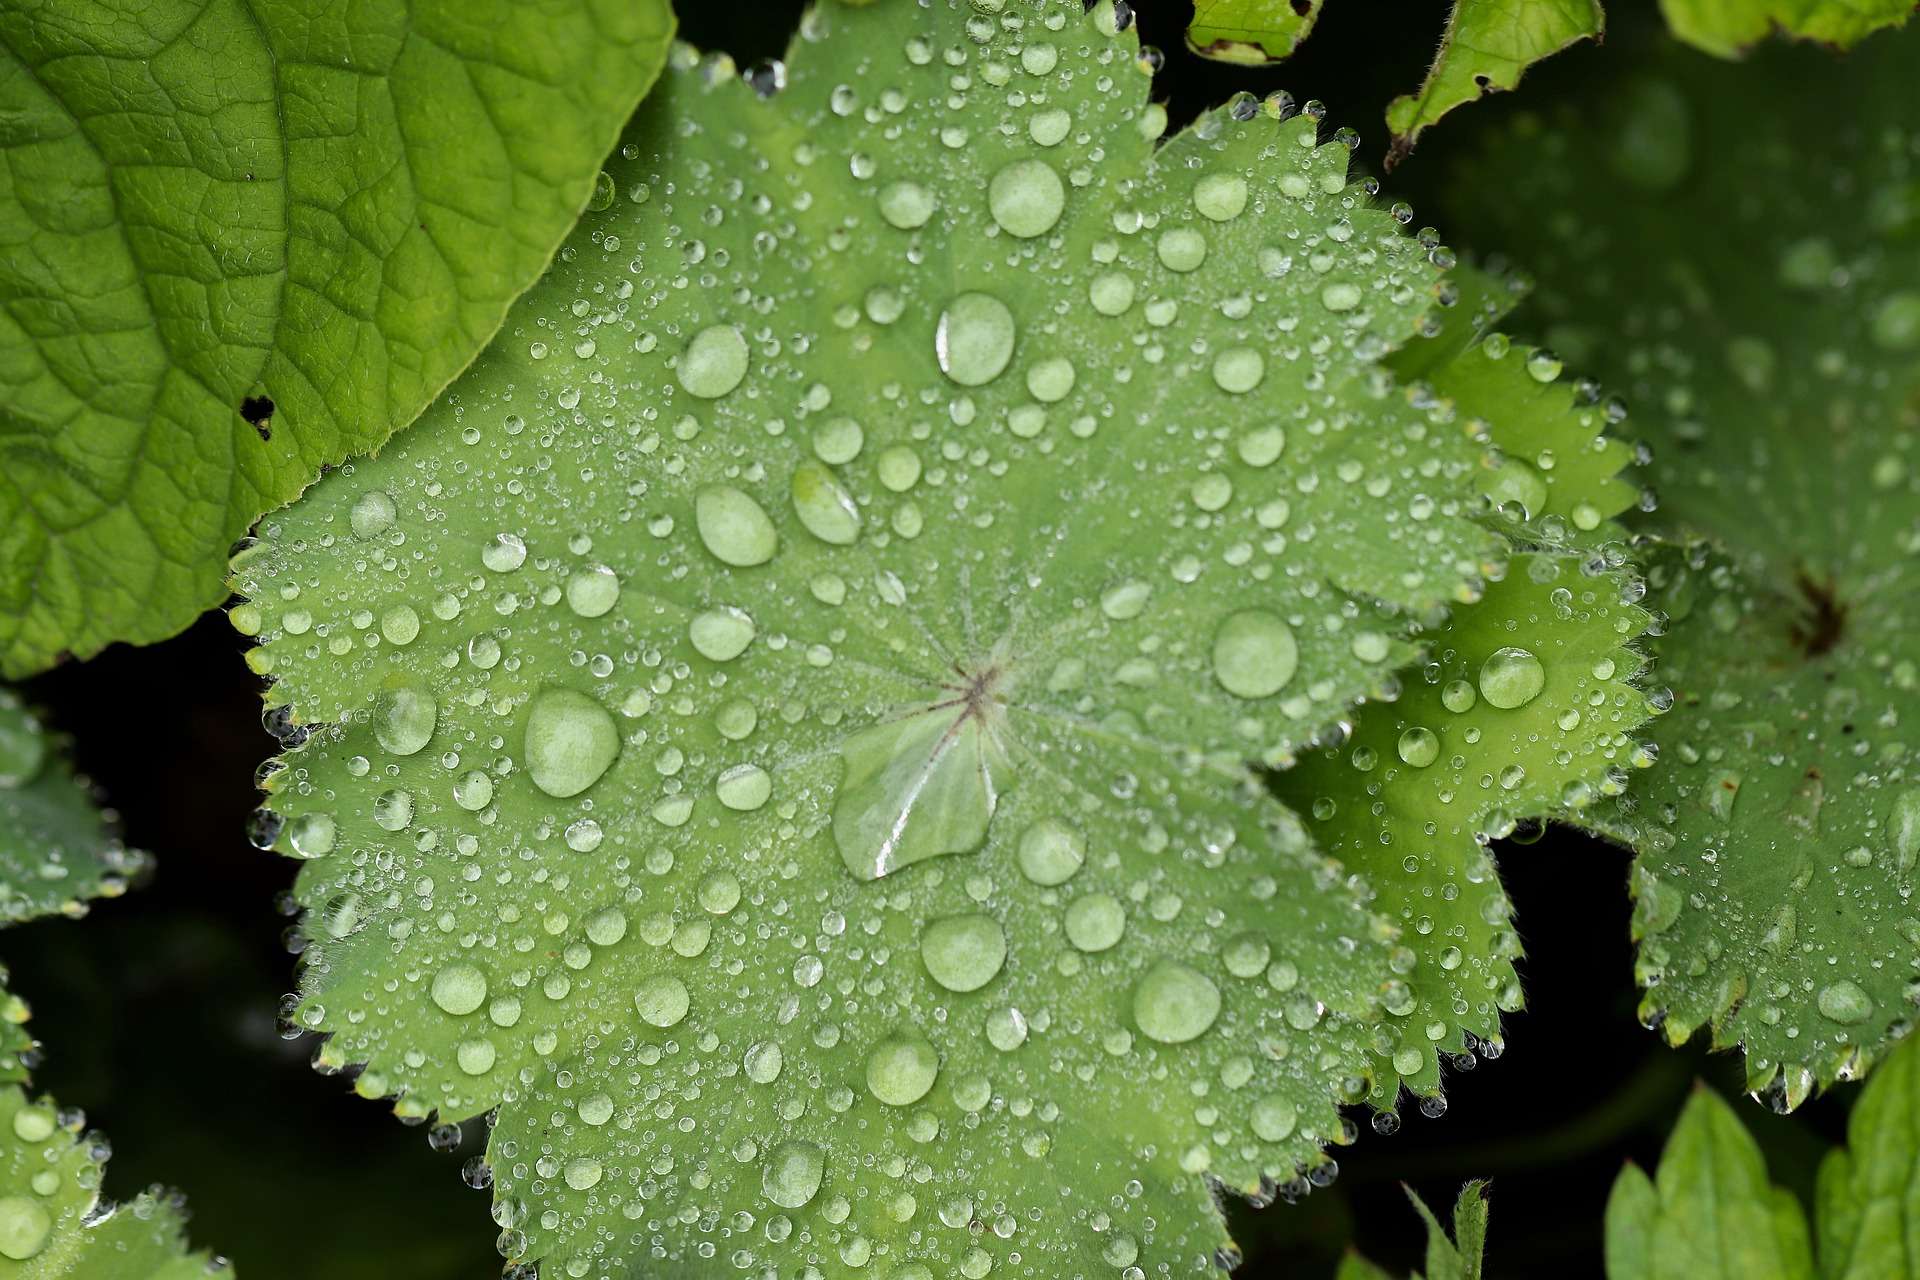 Les plantes activent une multitude de signaux d’alerte lorsqu’elles sont arrosées par la pluie. © Annette Meyer, Pixabay